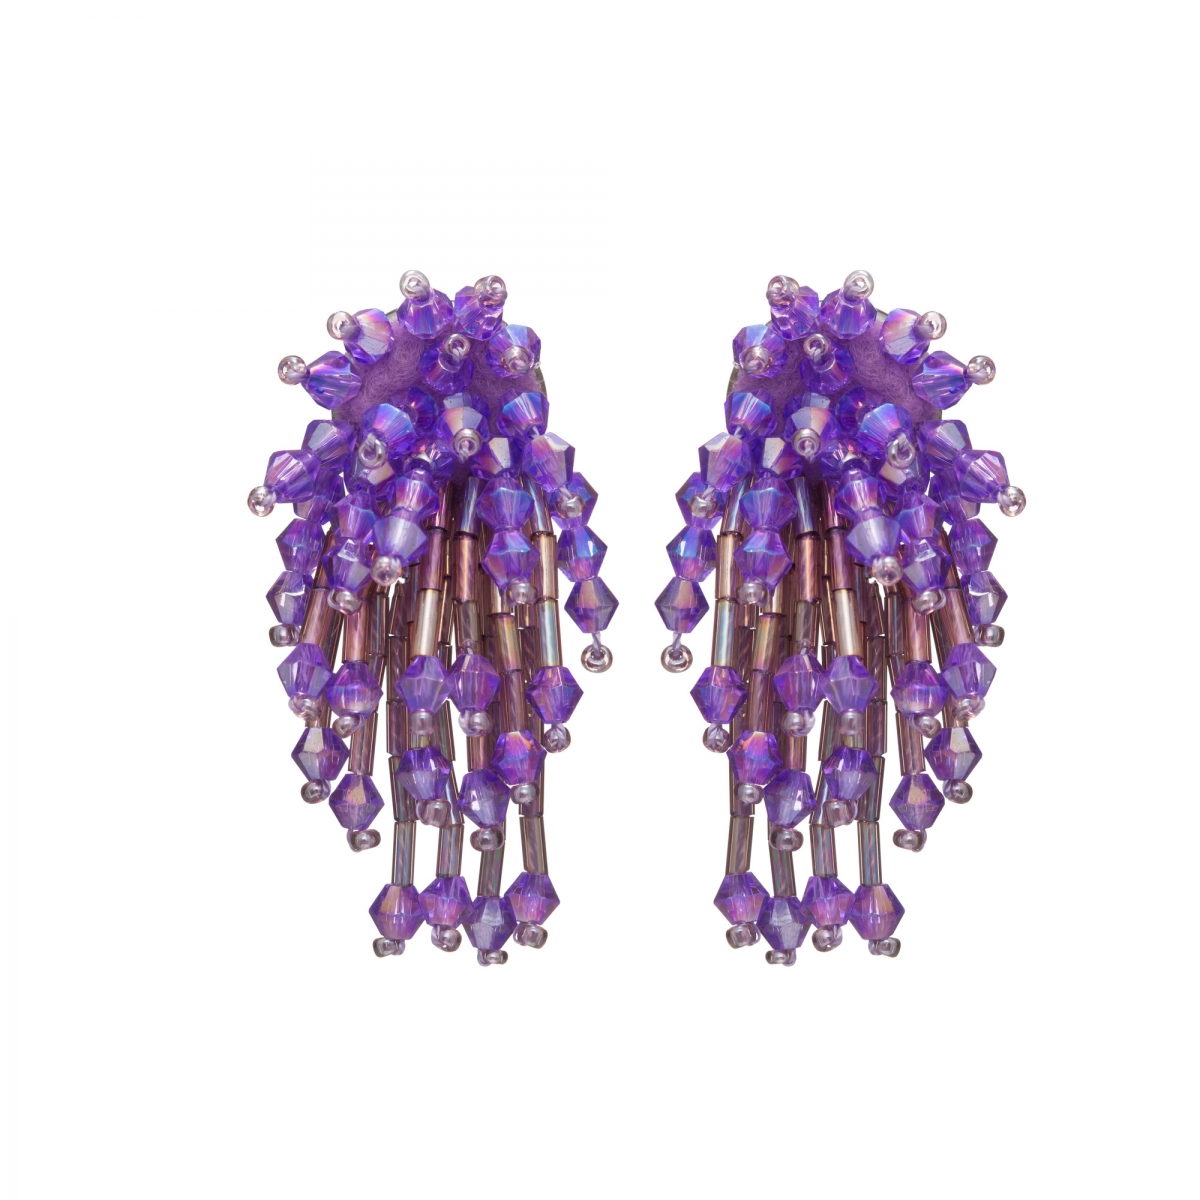 Náušnice Star Light Purple Metal Crystal Beads